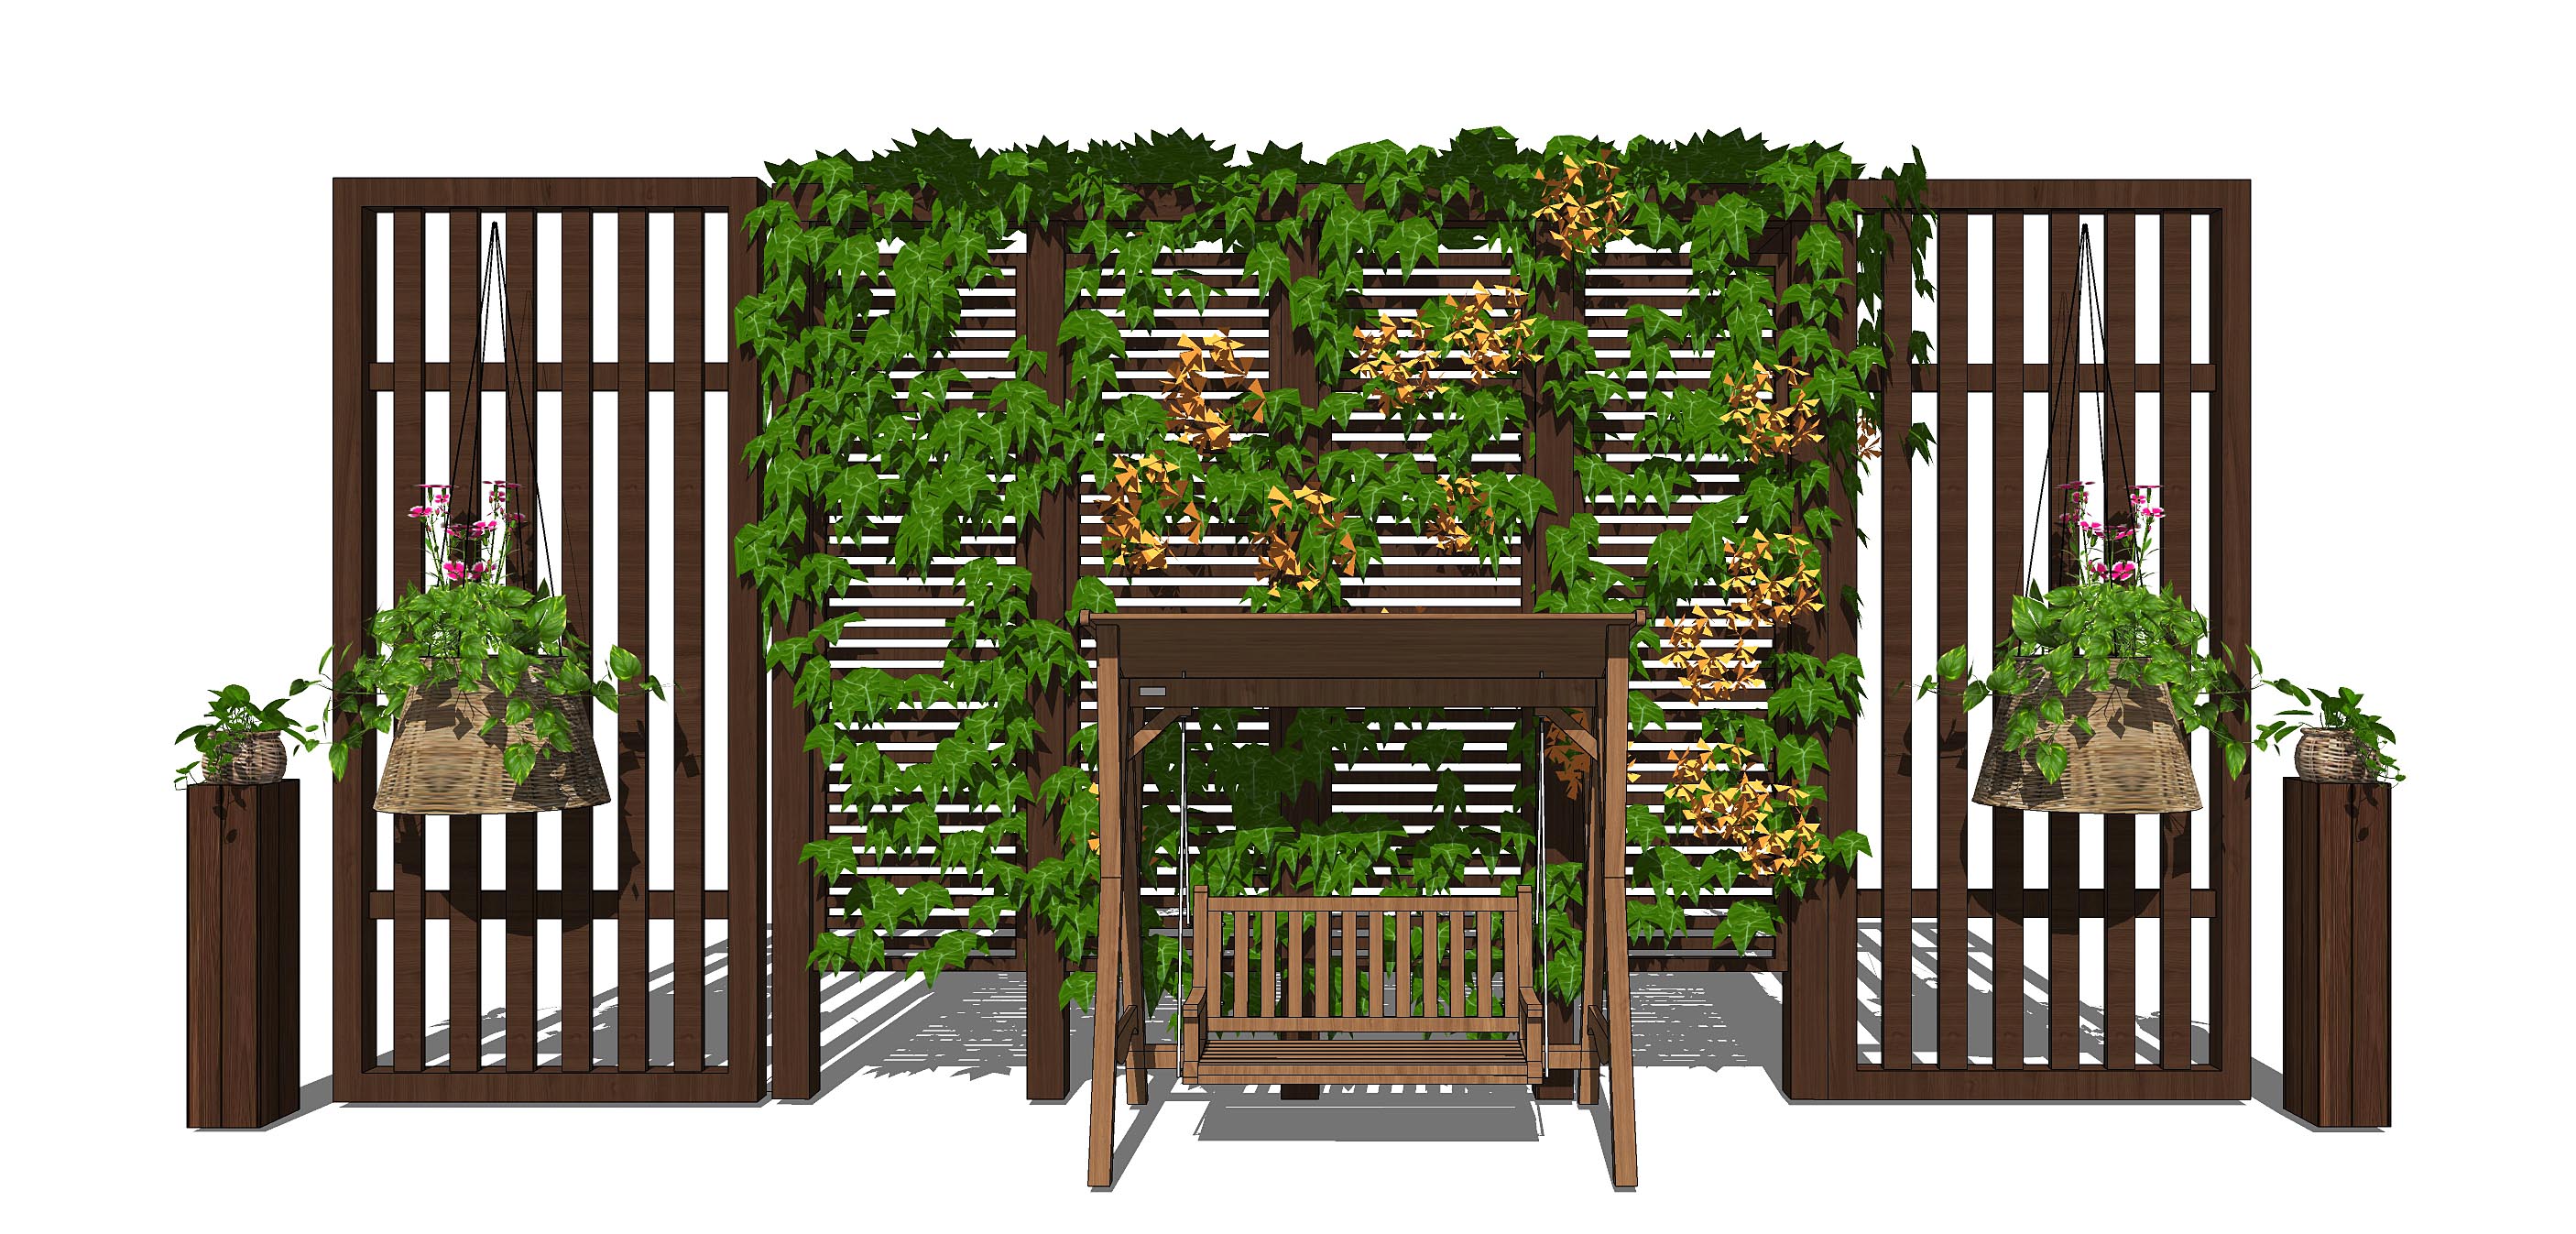 新中式精致庭院设计木质廊架花架户外秋千 (6)SU模型 庭院景观SU模型